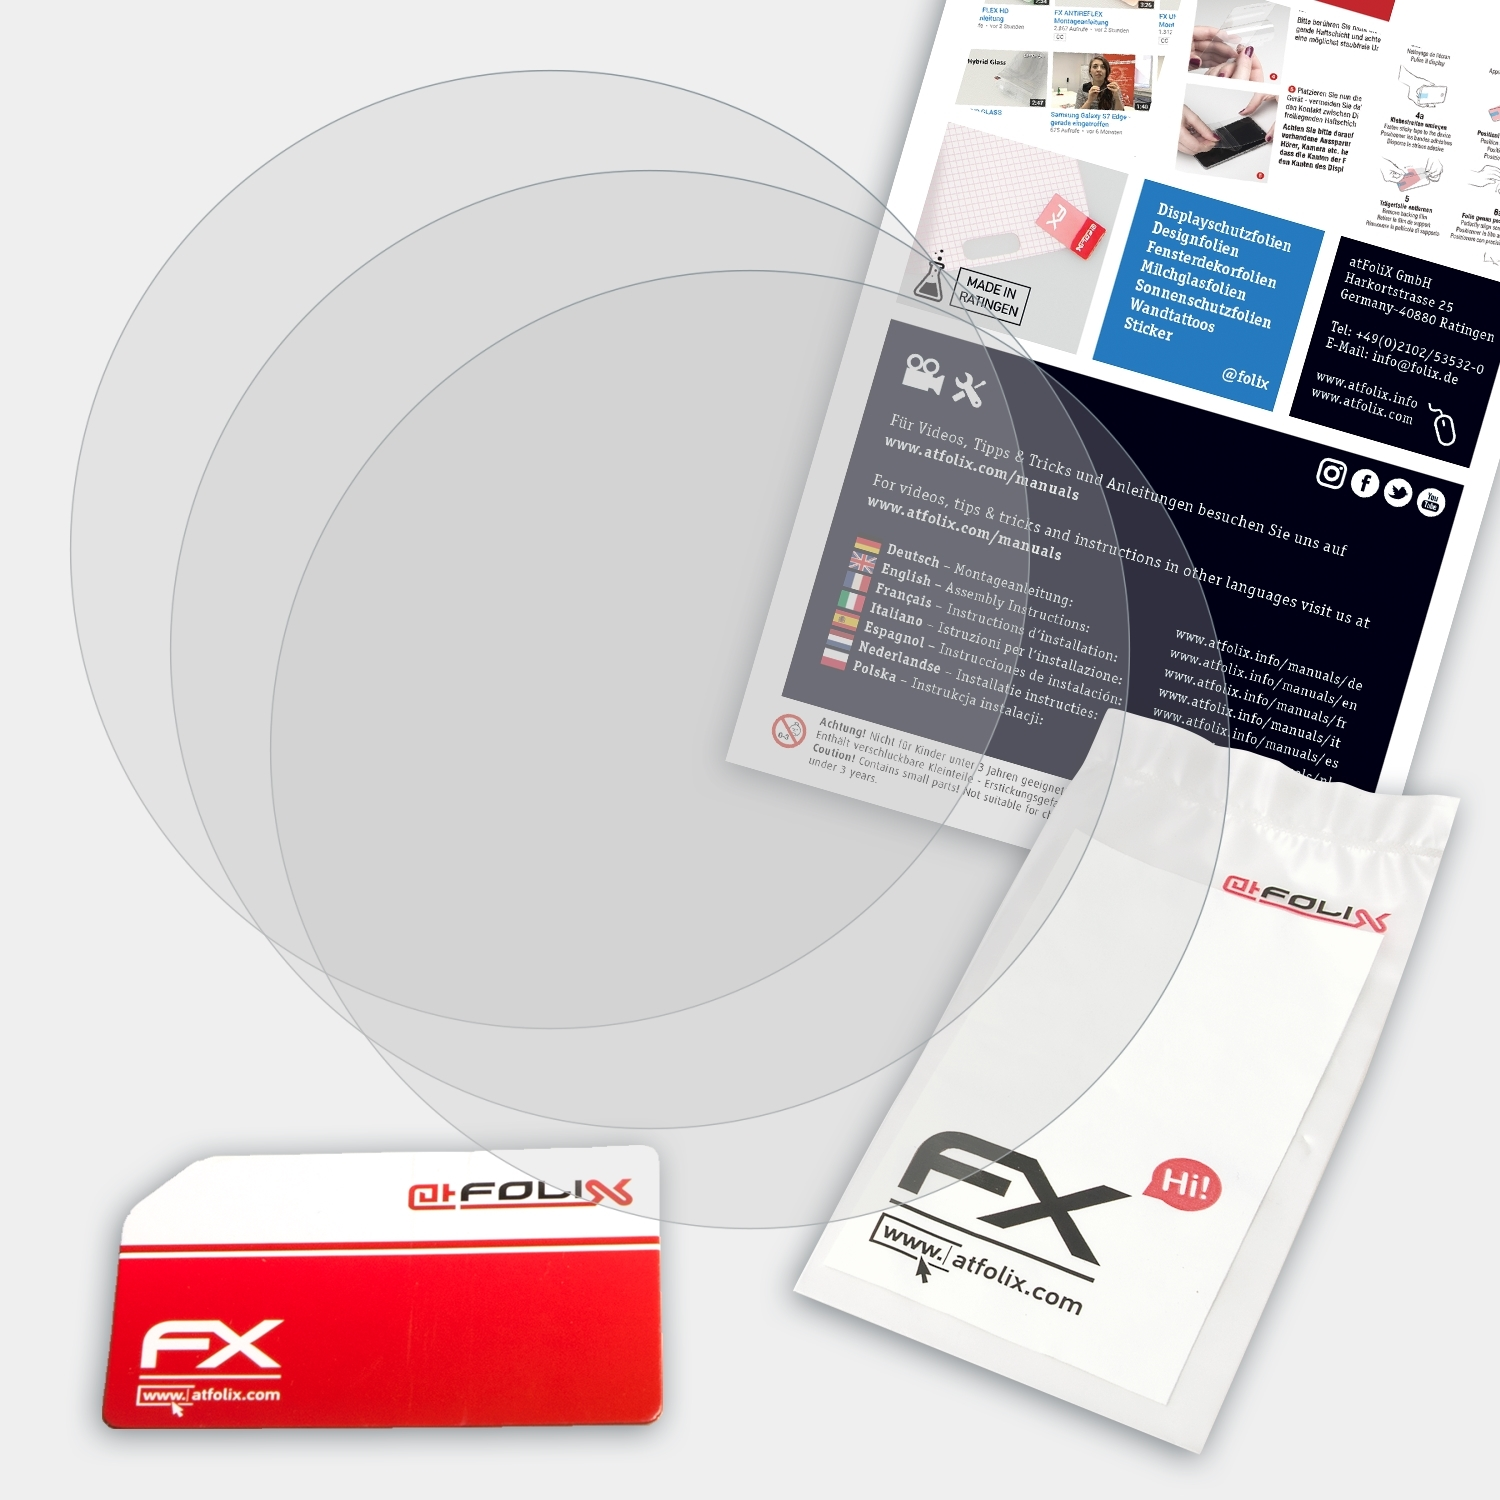 FX-Antireflex Marq Garmin Displayschutz(für 3x ATFOLIX Golfer)